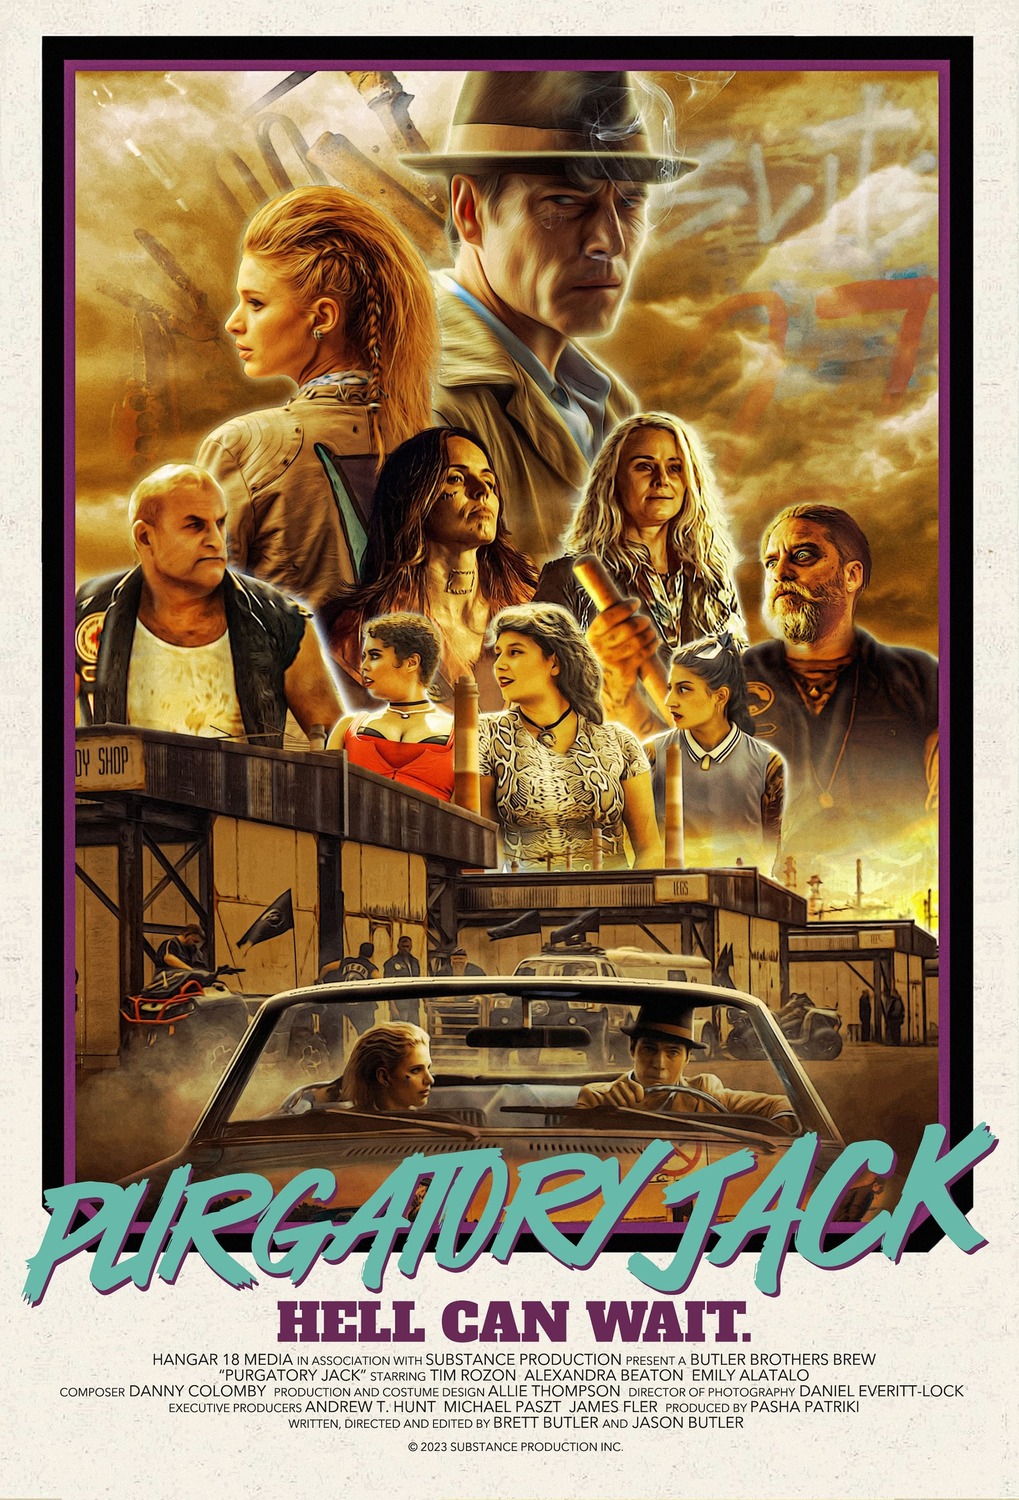 Extra Large Movie Poster Image for Purgatory Jack 